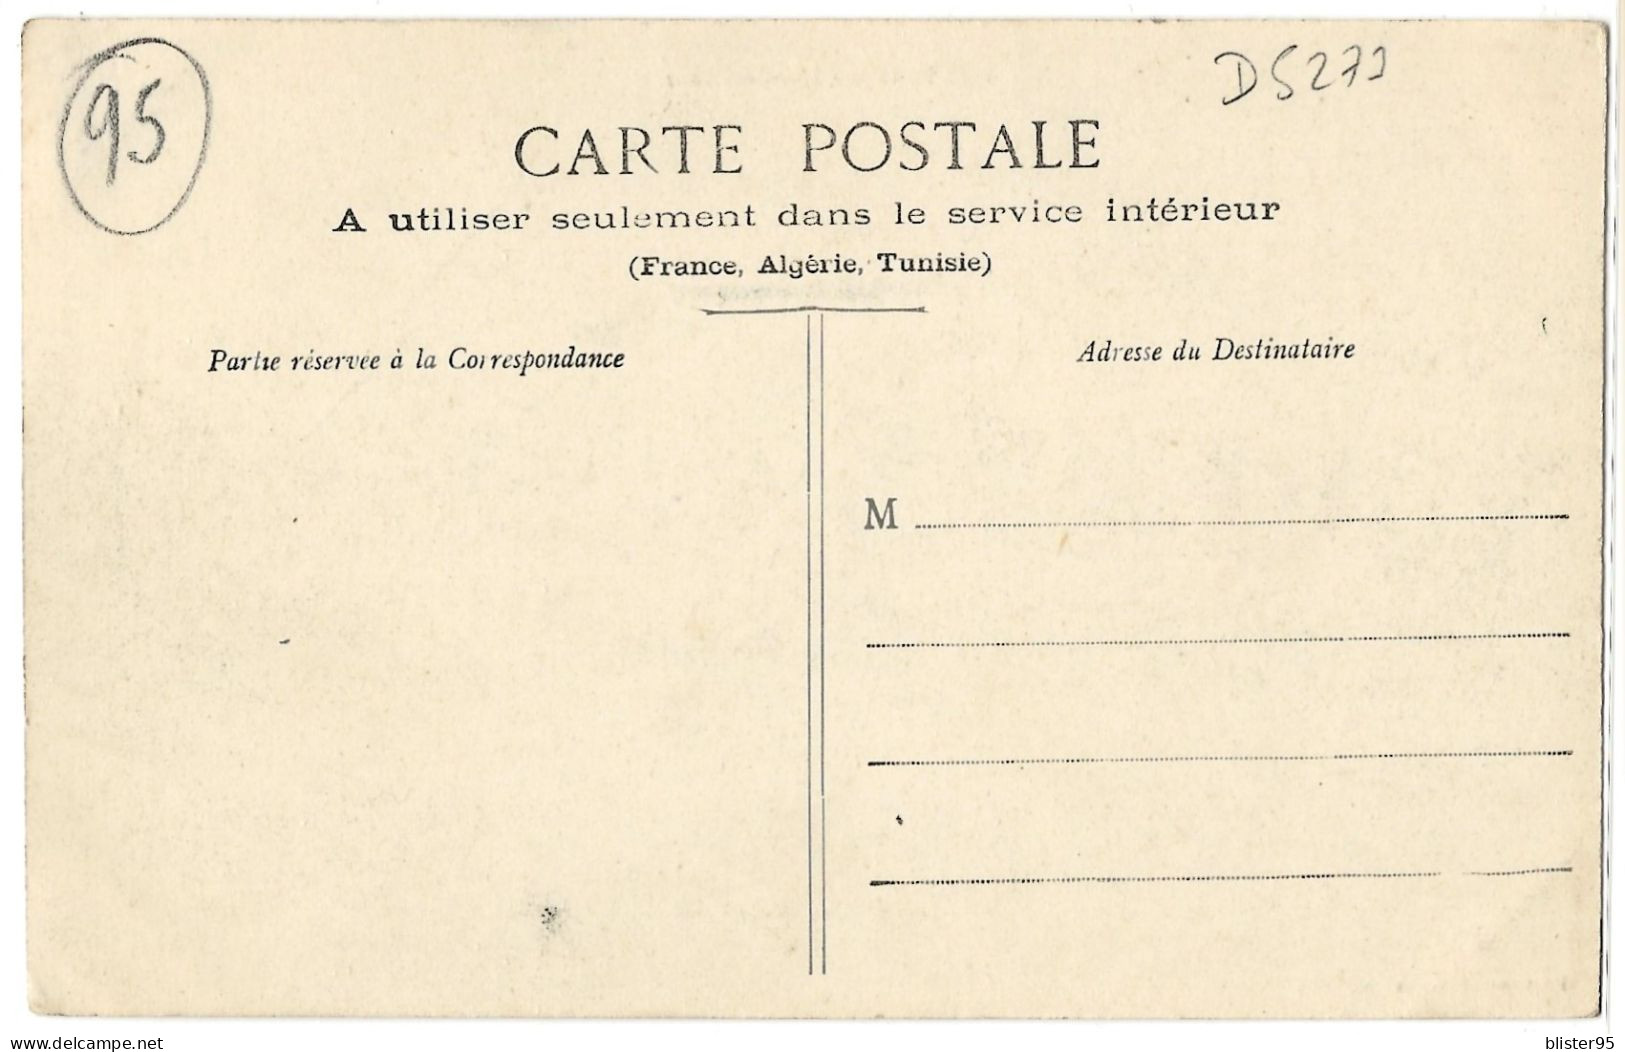 Pontoise (95) , L Ancien Pont , Non écrite 1900 - Pontoise